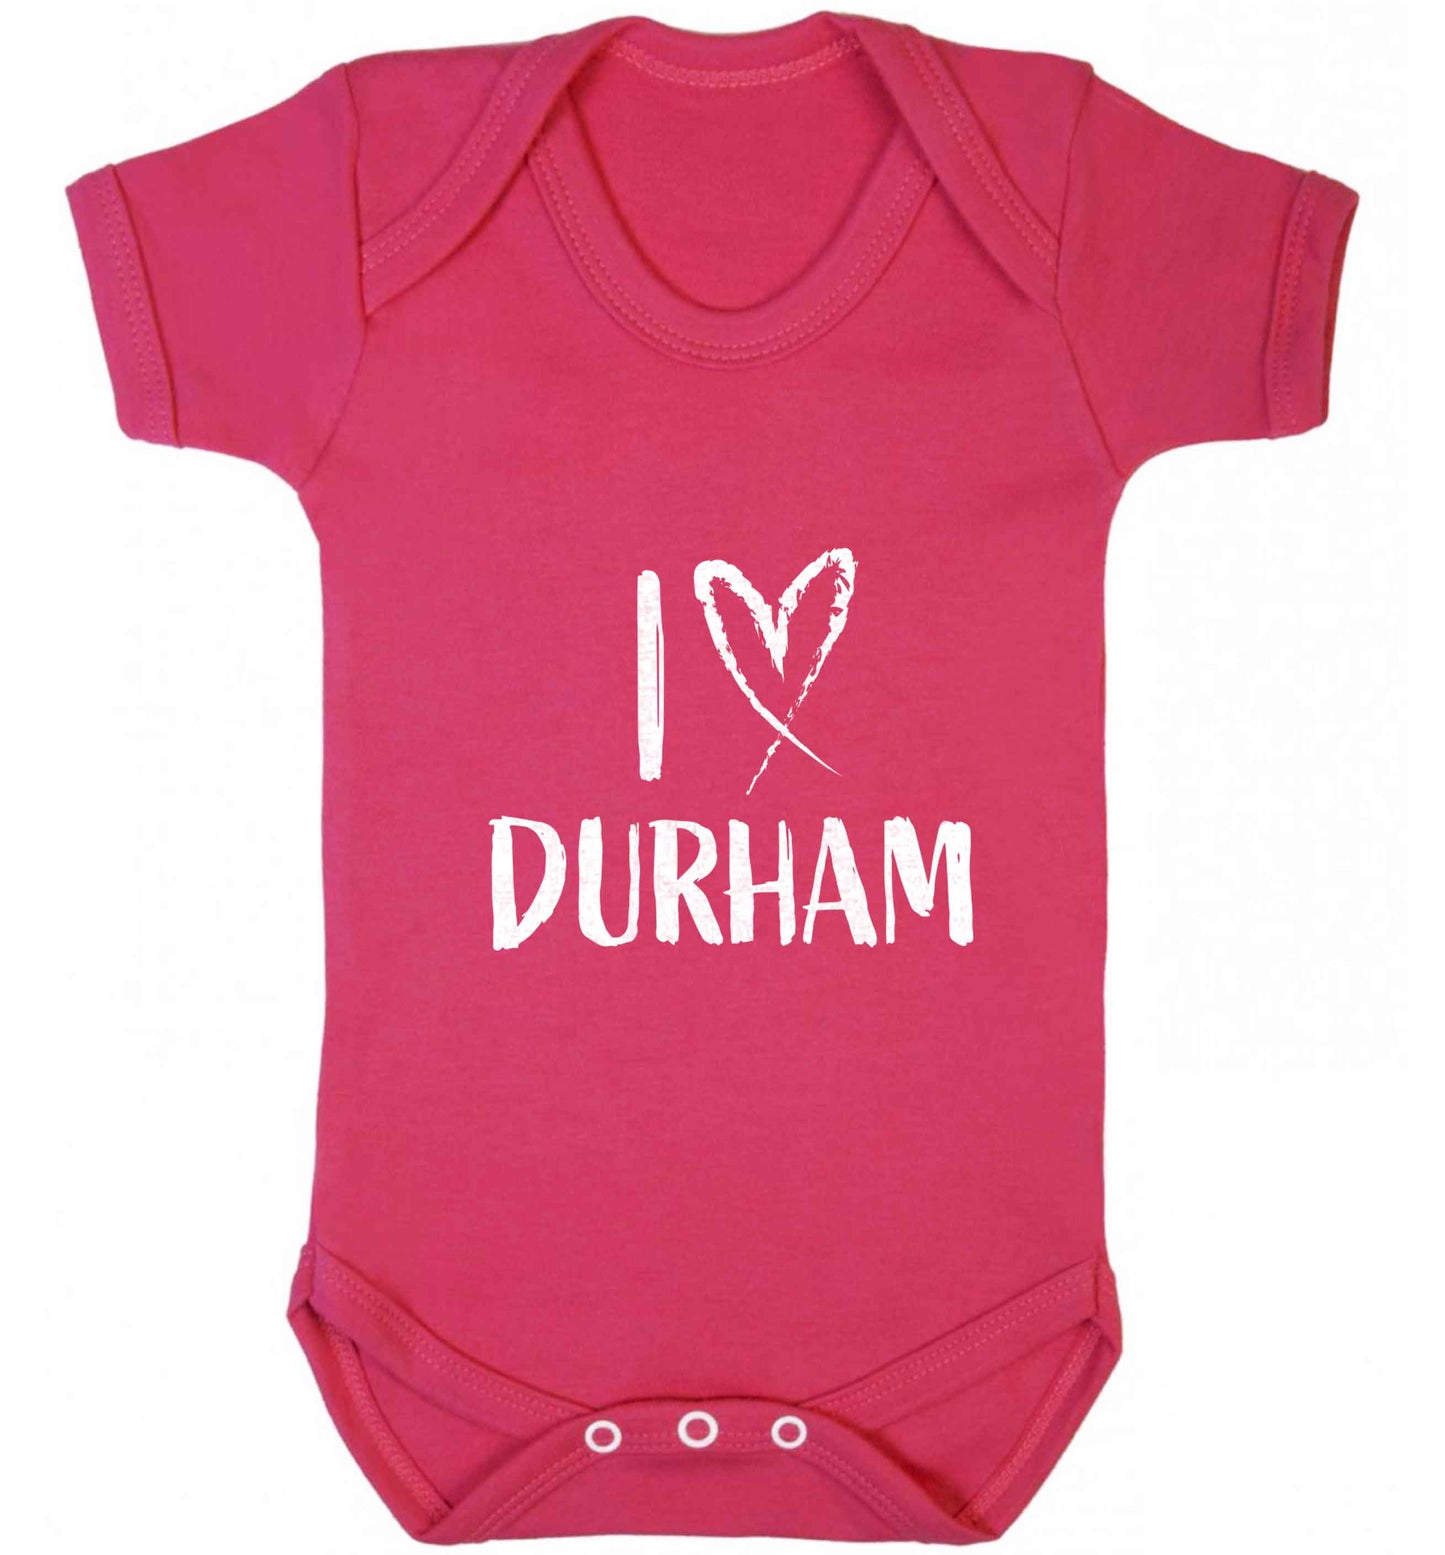 I love Durham baby vest dark pink 18-24 months